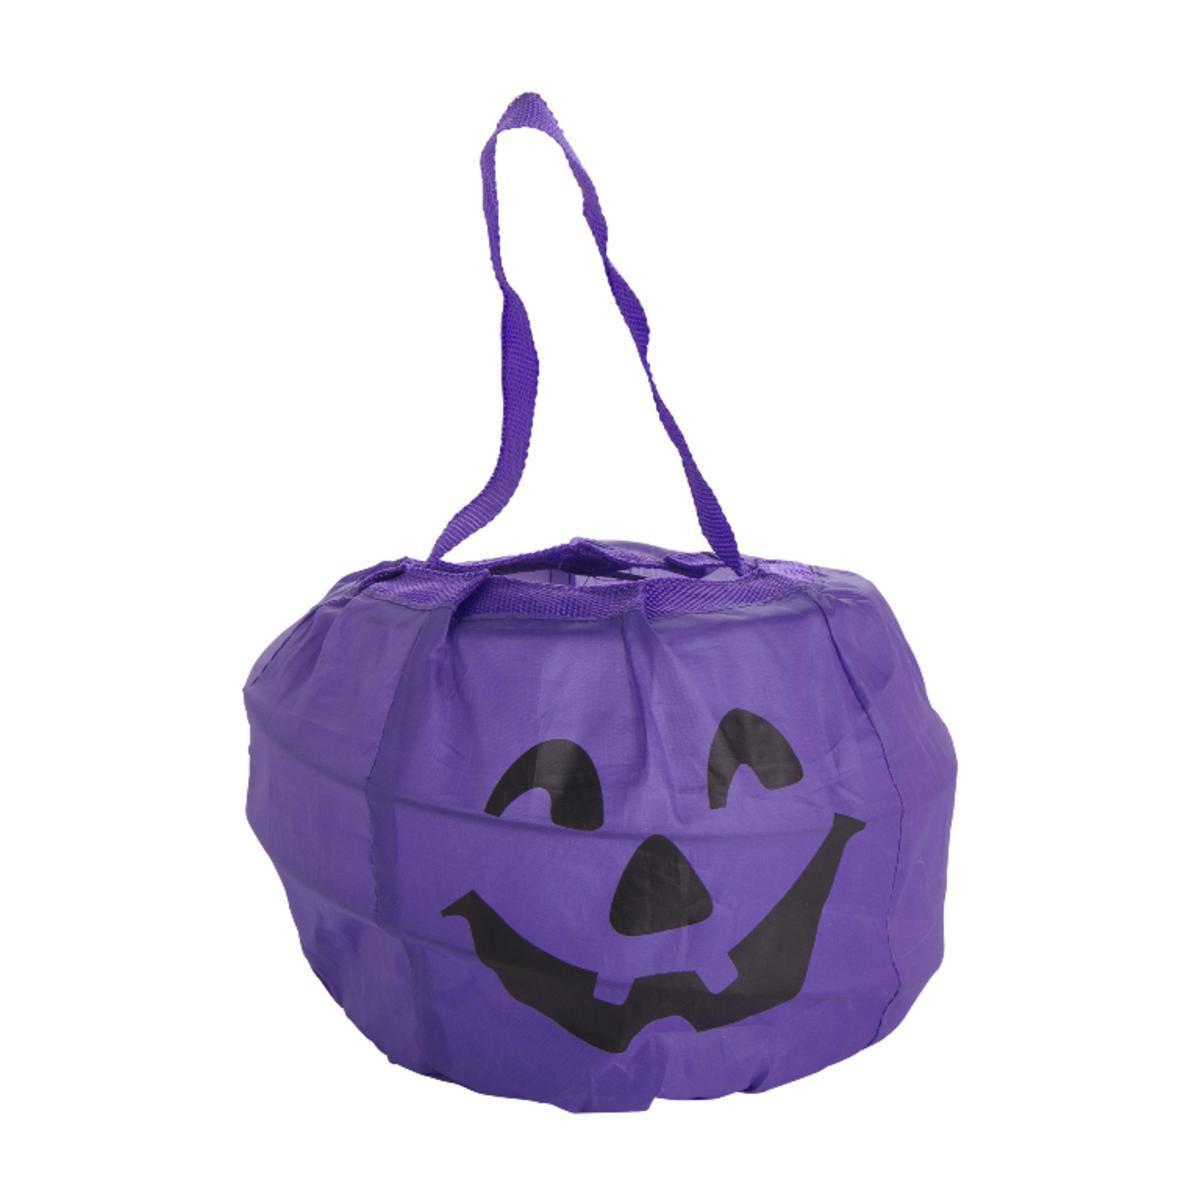 Sac à bonbons Pop-up Halloween en polyester taffetas - 17 x 13 cm - Noir, violet ou orange